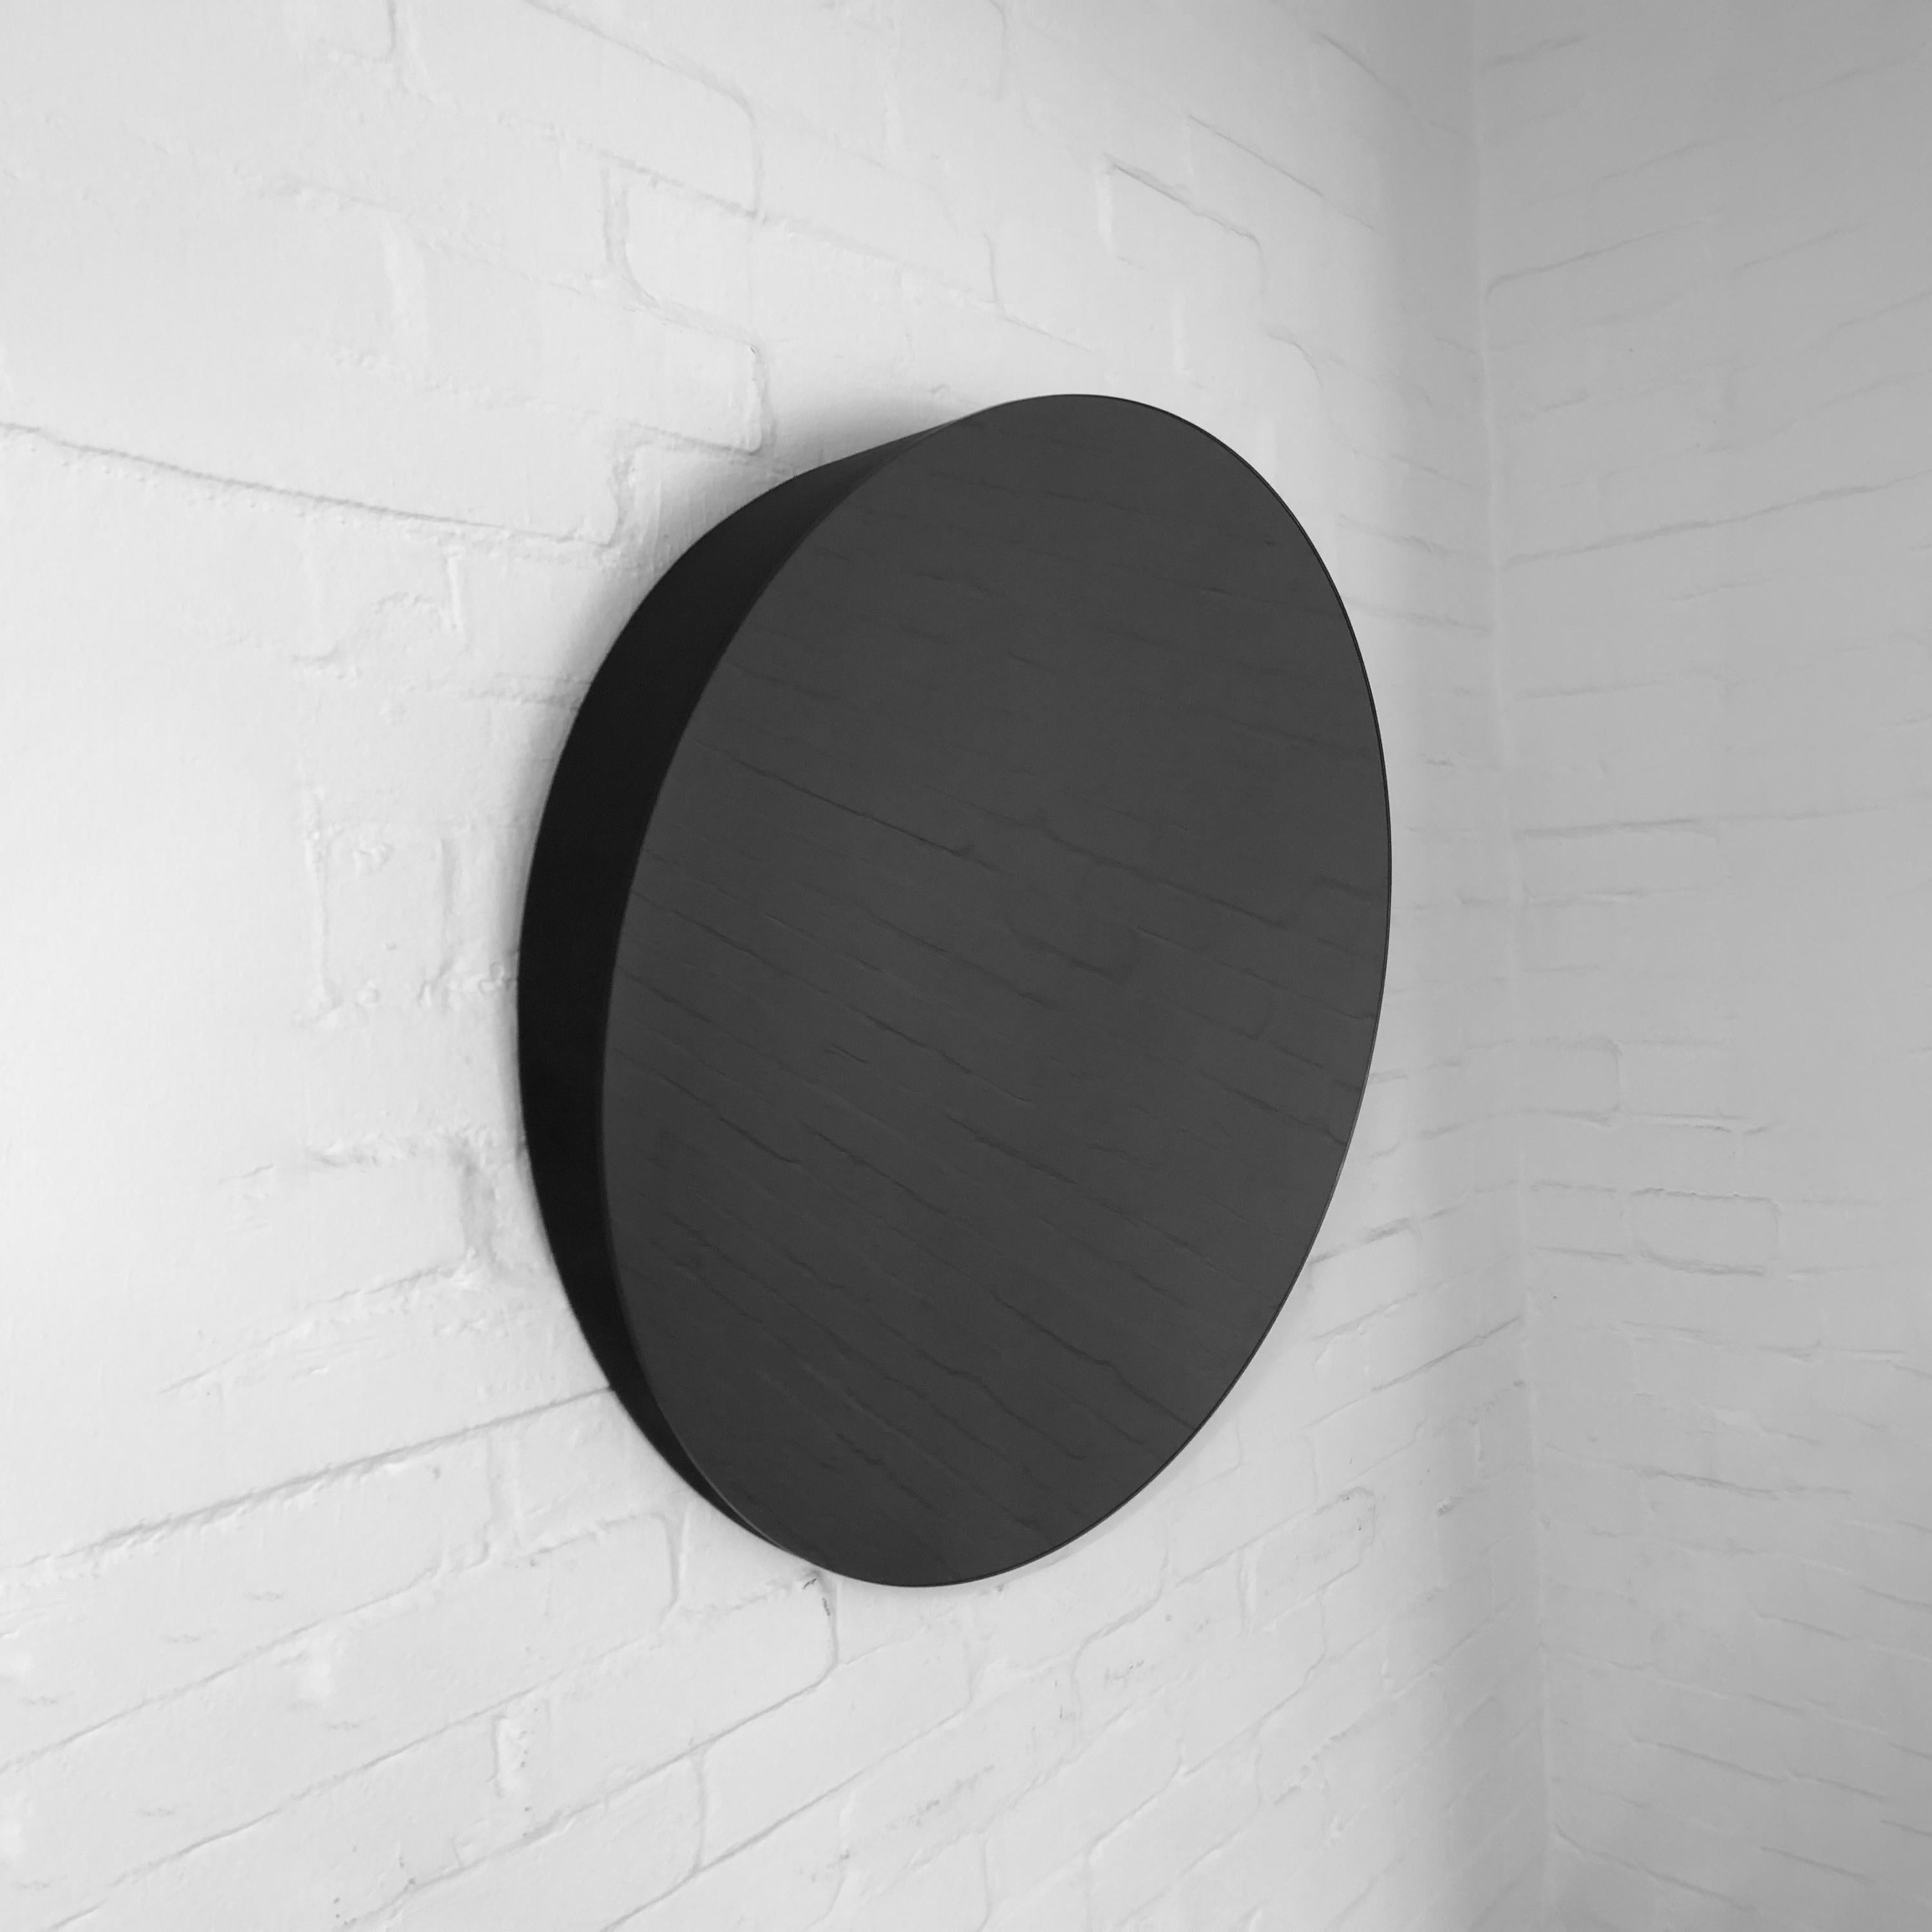 British Orbis Round Black Tilted Minimalist Accessible Mirror, Medium For Sale